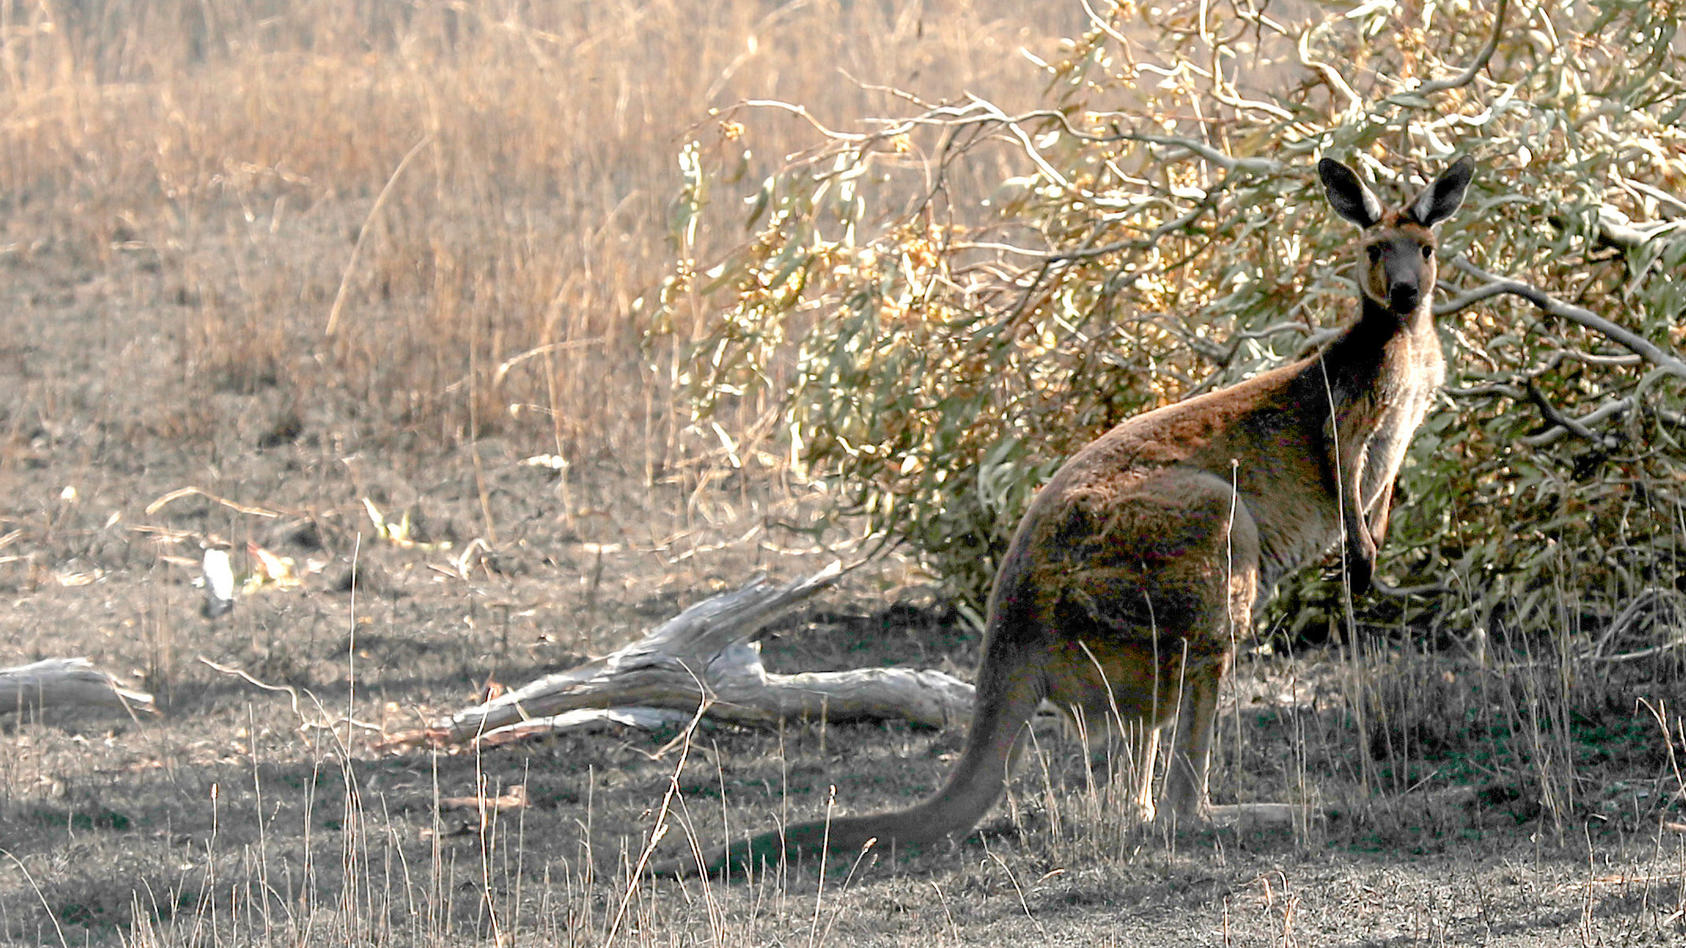 ARCHIV - 22.12.2019, Australien, Adelaide: SYMBOLBILD - Ein Känguru steht auf verbranntem Land an einem Busch. (zu dpa «Golferin in Australien von Känguru attackiert - «stabiler Zustand»») Foto: Kelly Barnes/AAP/dpa +++ dpa-Bildfunk +++